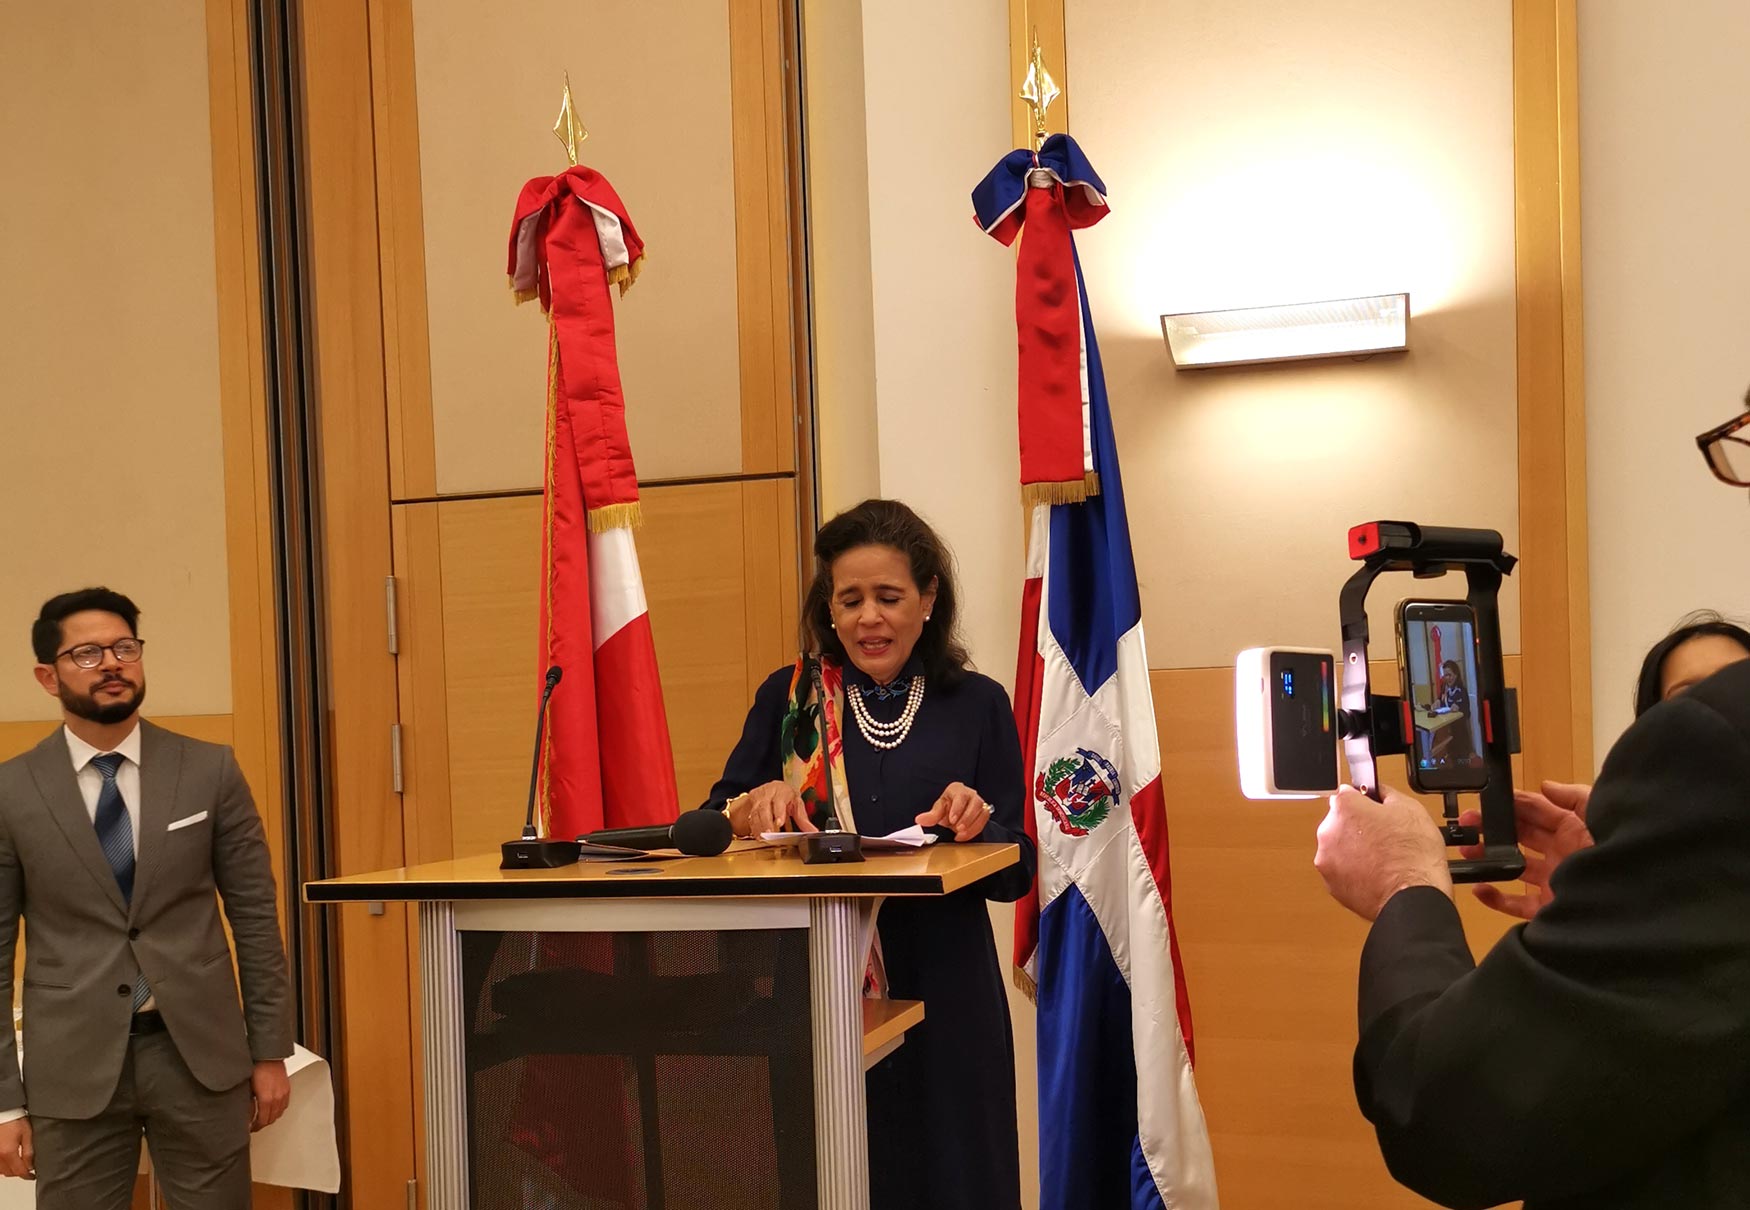 S.E. Sra. Embajadora Laura Faxas De Jorgensen en su discurso de apertura. Foto: CulturaLatina